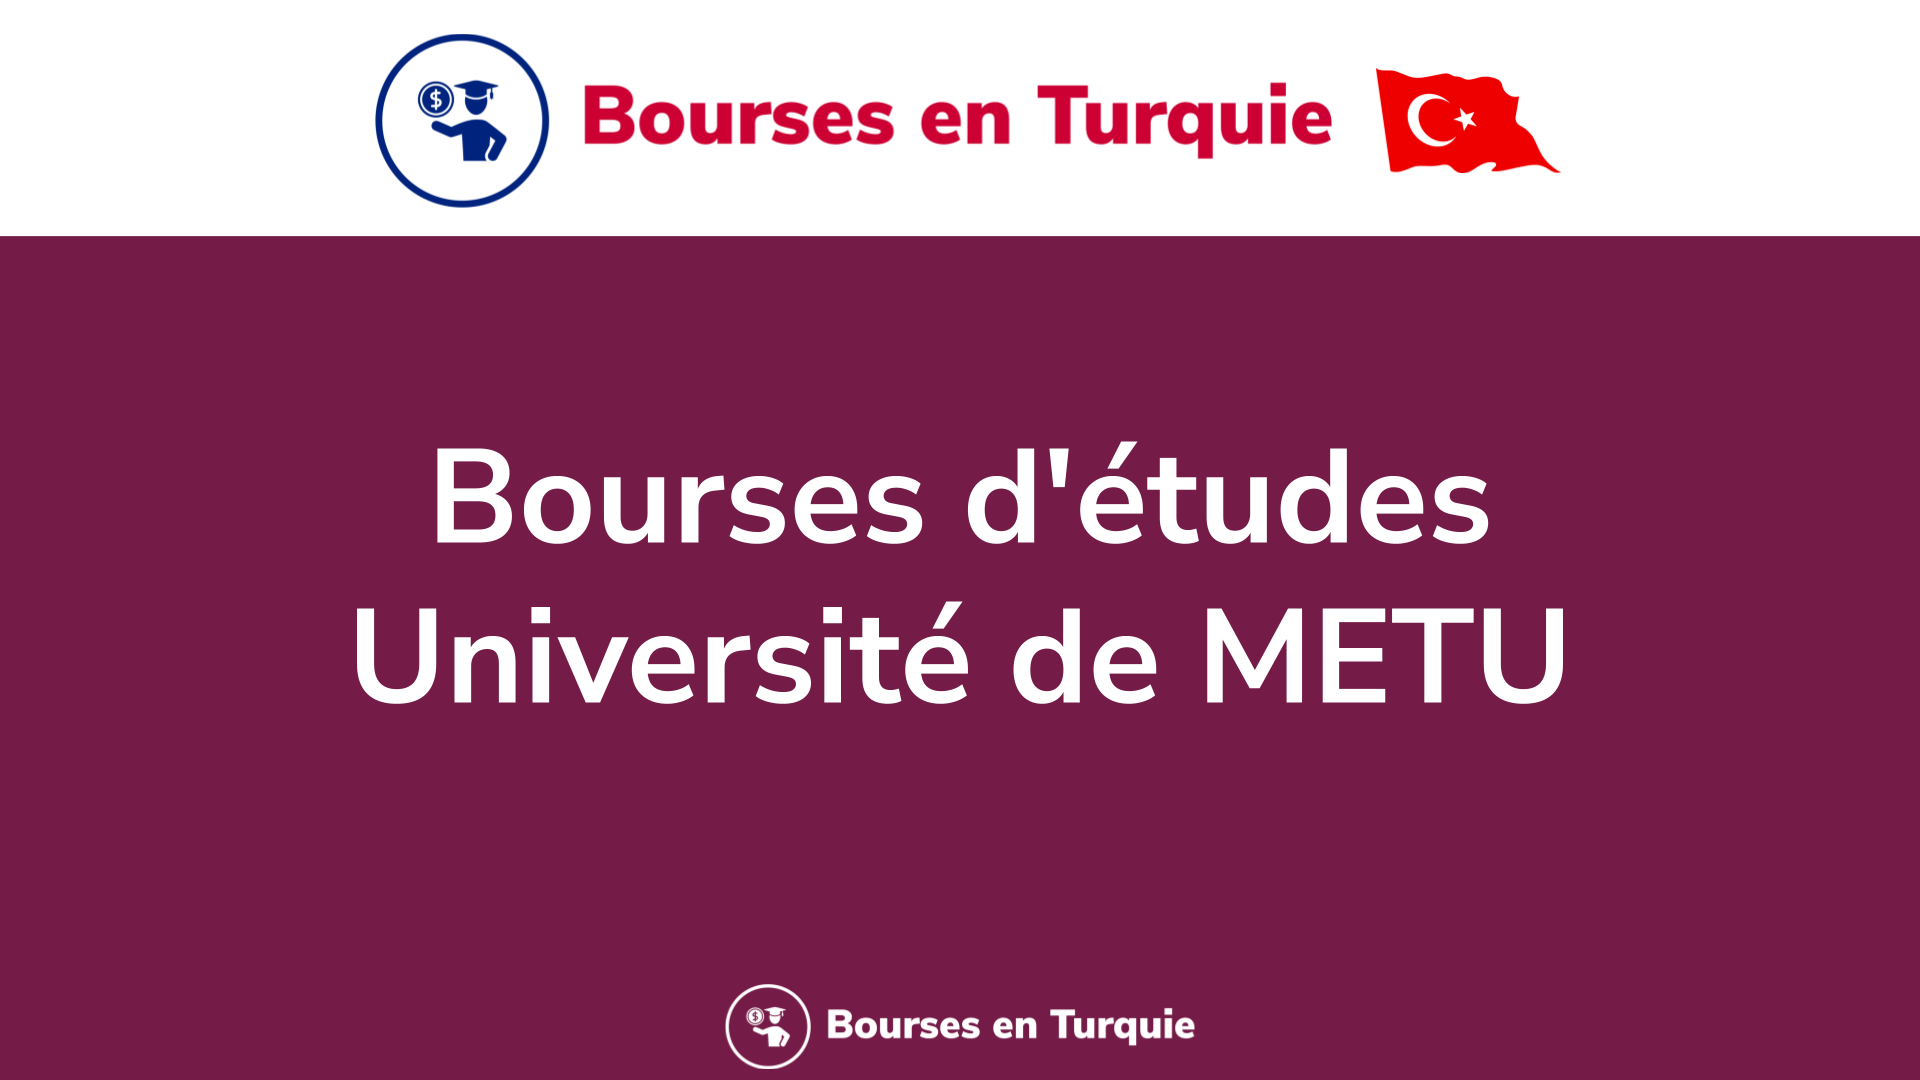 Bourses d'études Université de METU